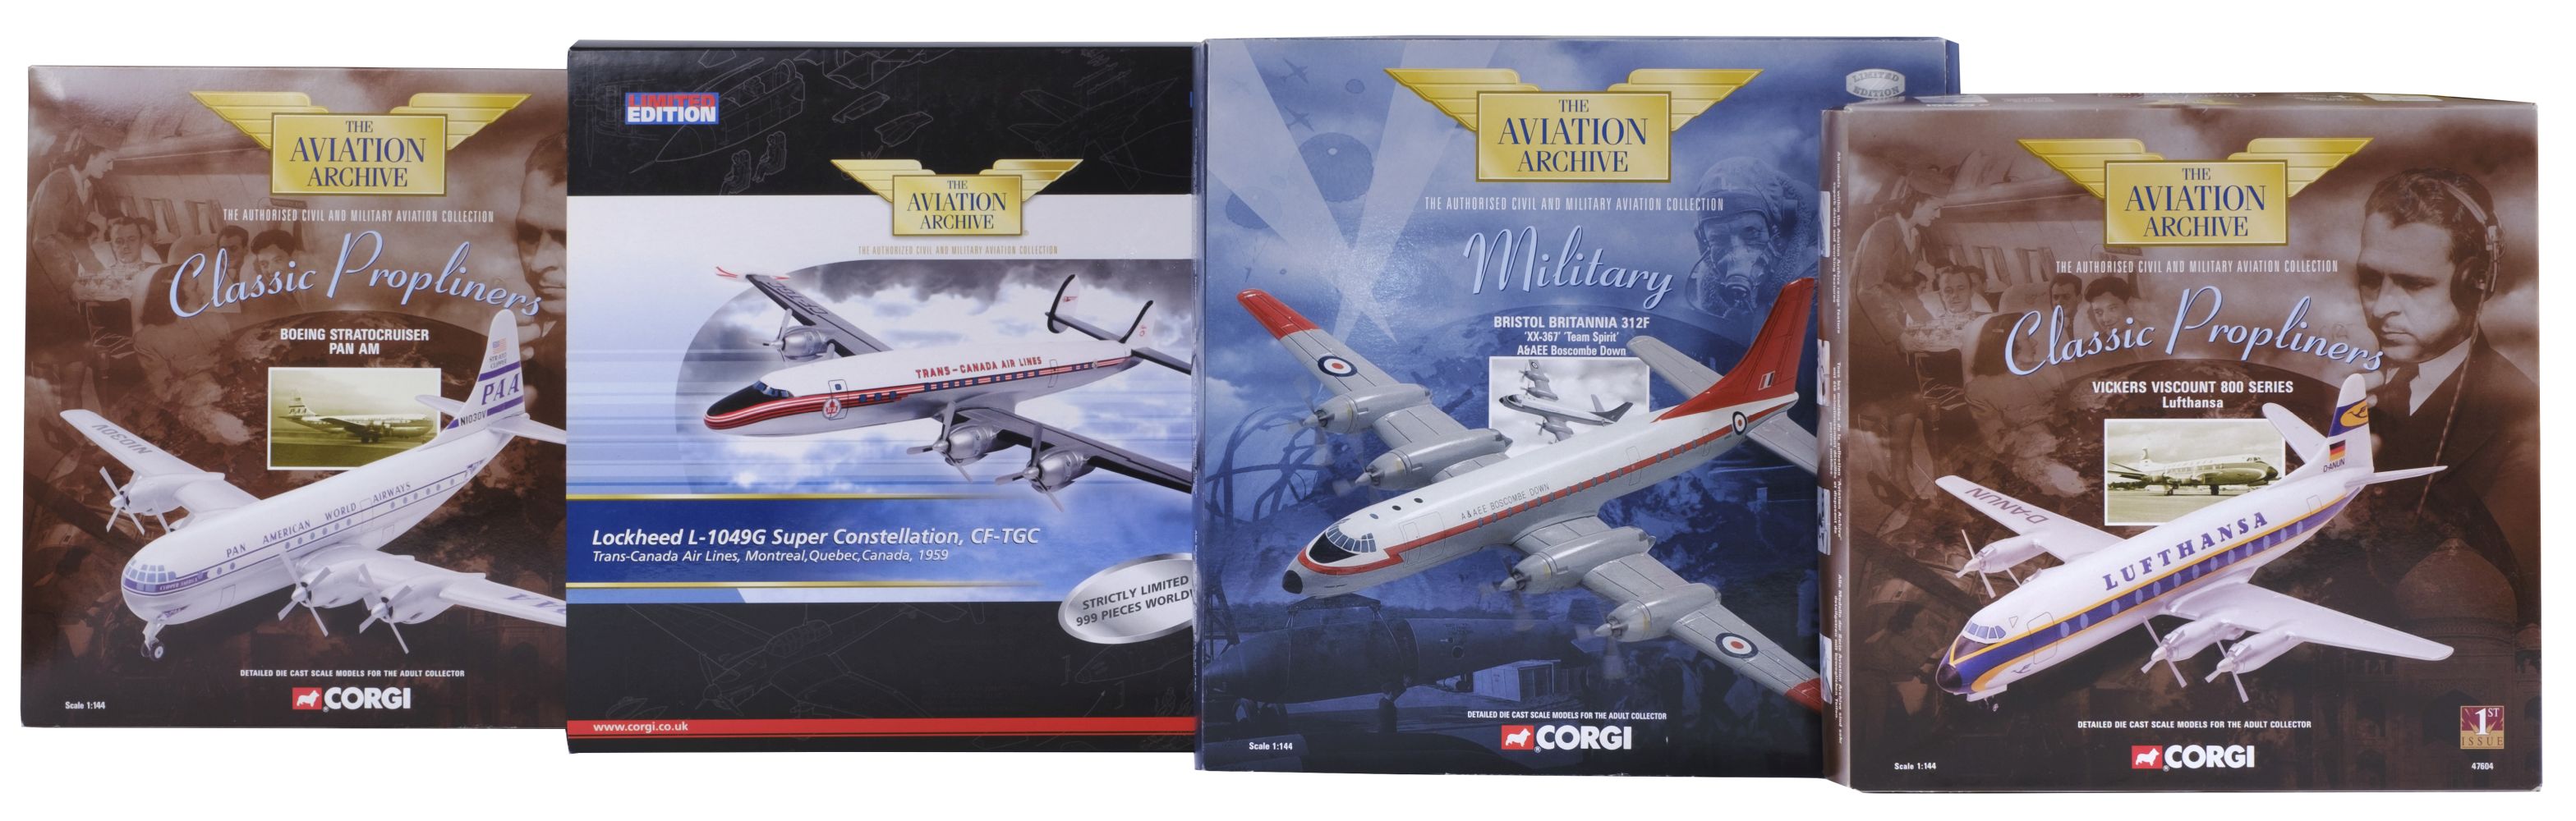 Corgi Classics. A collection of 42 Propliner diecast model aircraft